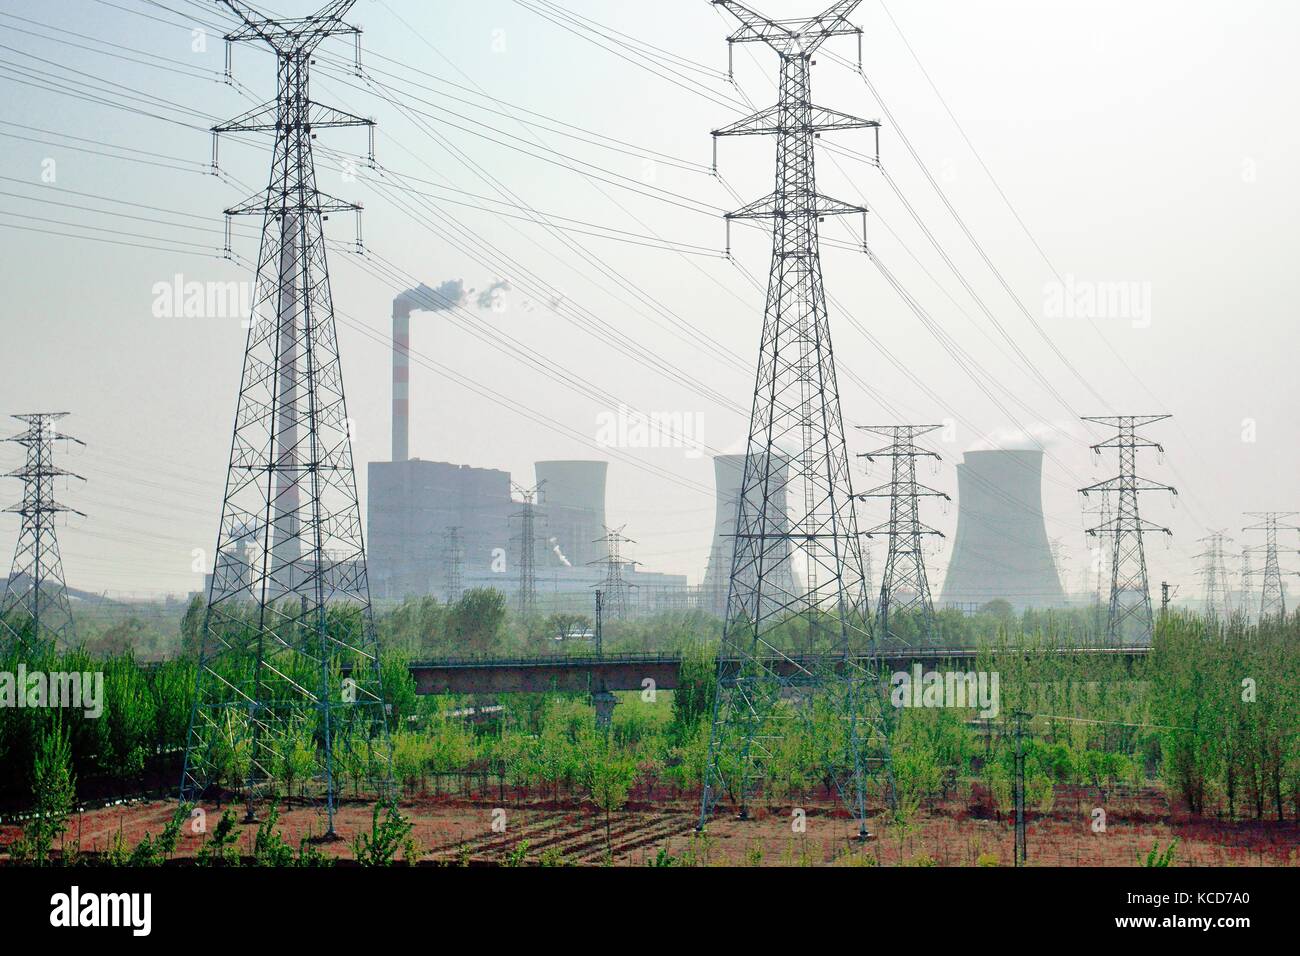 Chinesische Kohle 1,3 MW Stromerzeugung Kraftwerk in yangliuqing auf der westlichen Seite der Stadt Tianjin, China. Kühltürme und Raster Pylonen Stockfoto